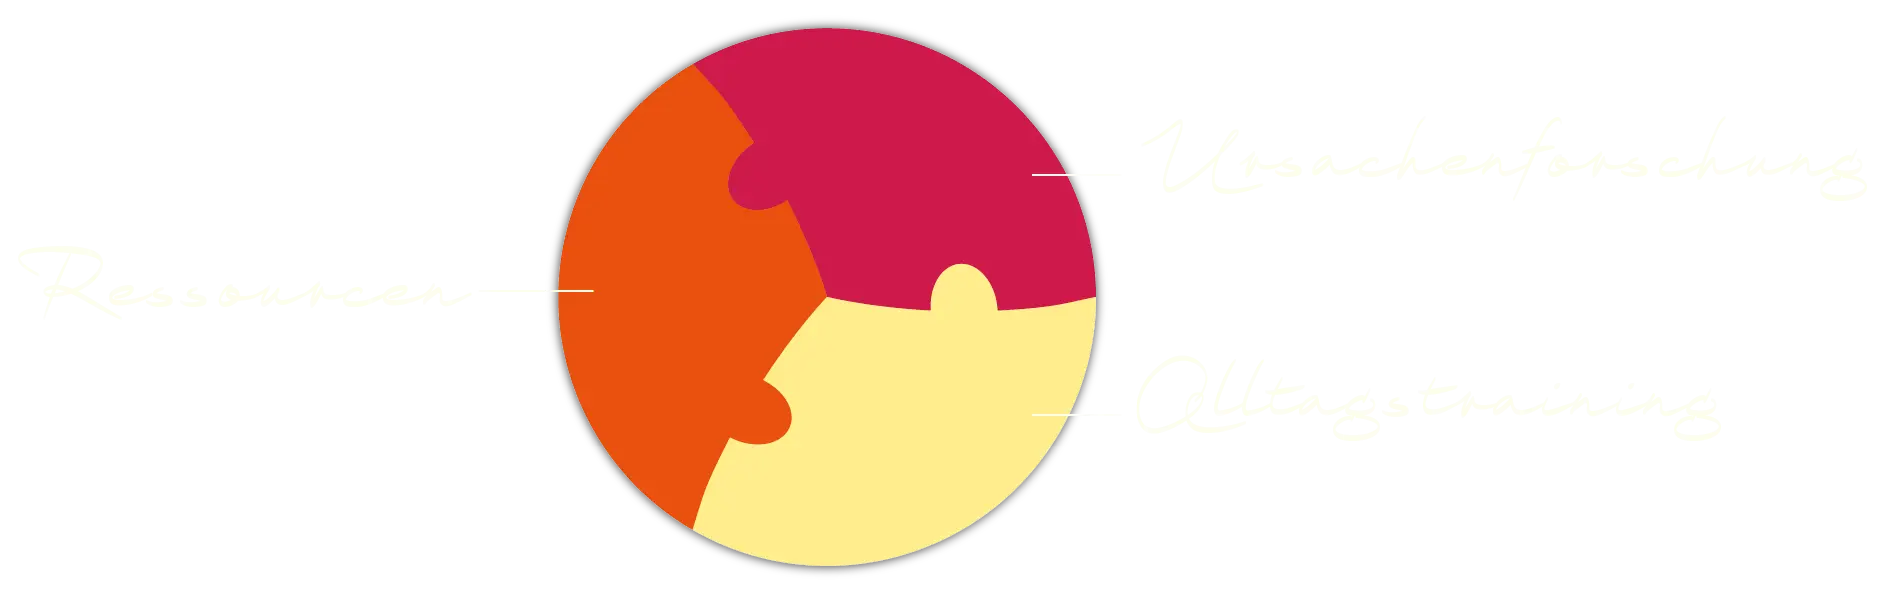 Eine kreisförmige Puzzlegrafik mit drei ineinandergreifenden Teilen in Rot, Orange und Gelb. Die Abschnitte sind mit „Ressourcen“, „Ideen teilen“ und „Blog-Posting“ beschriftet.